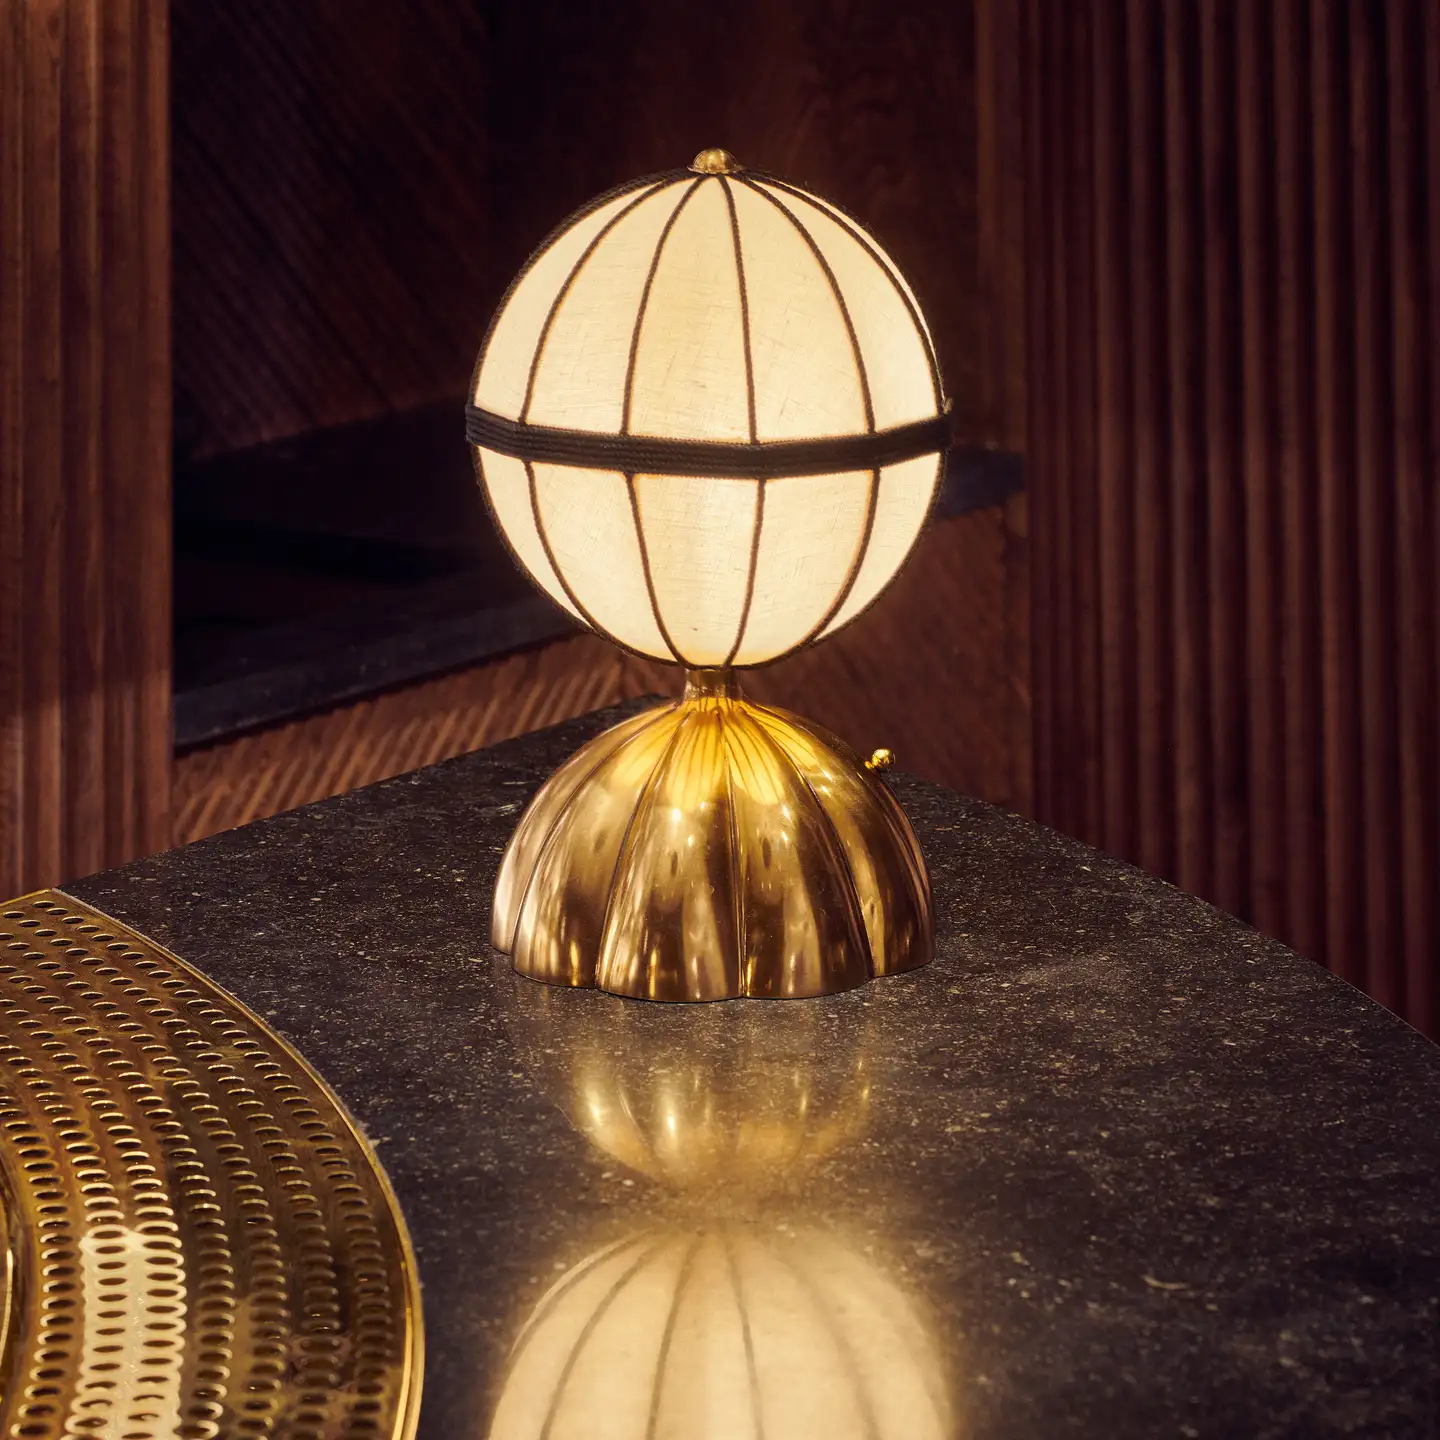 Golden art deco style floor lamp